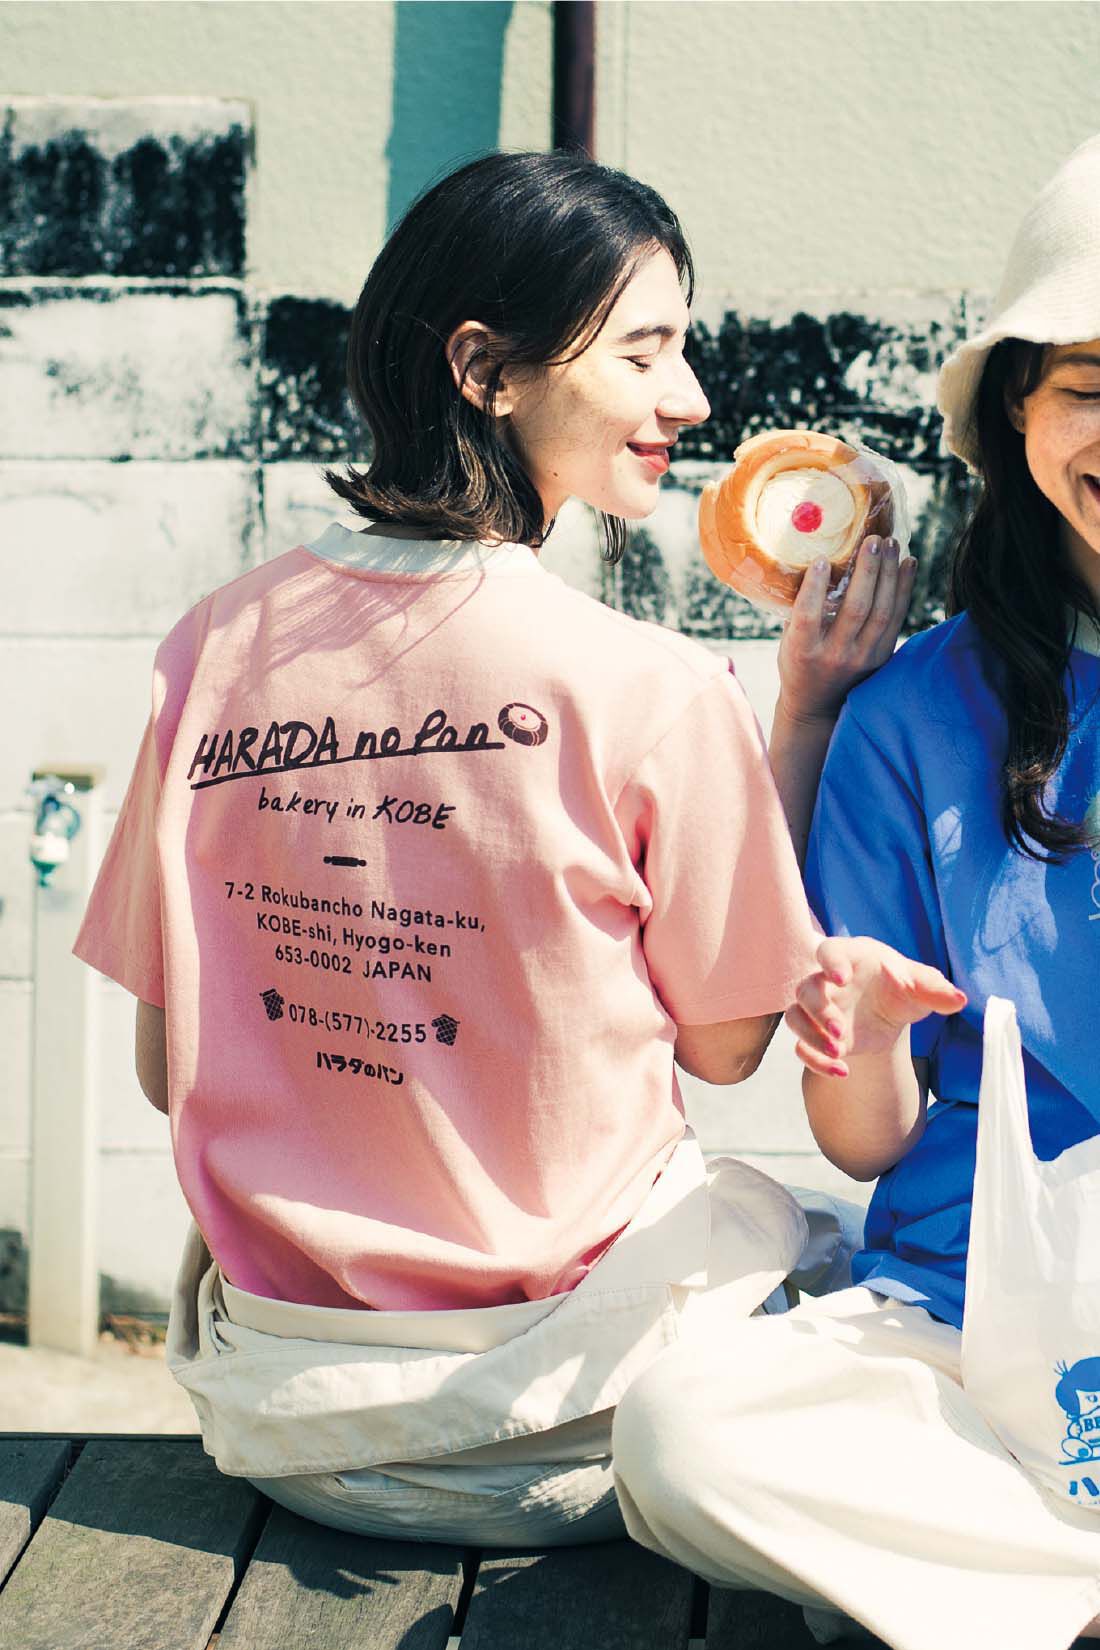 Live in  comfort|Live love cottonプロジェクト リブ イン コンフォート神戸のベーカリーハラダのパンさんとつくったオーガニックコットンのレトロかわいいTシャツ〈ジェイブルー〉